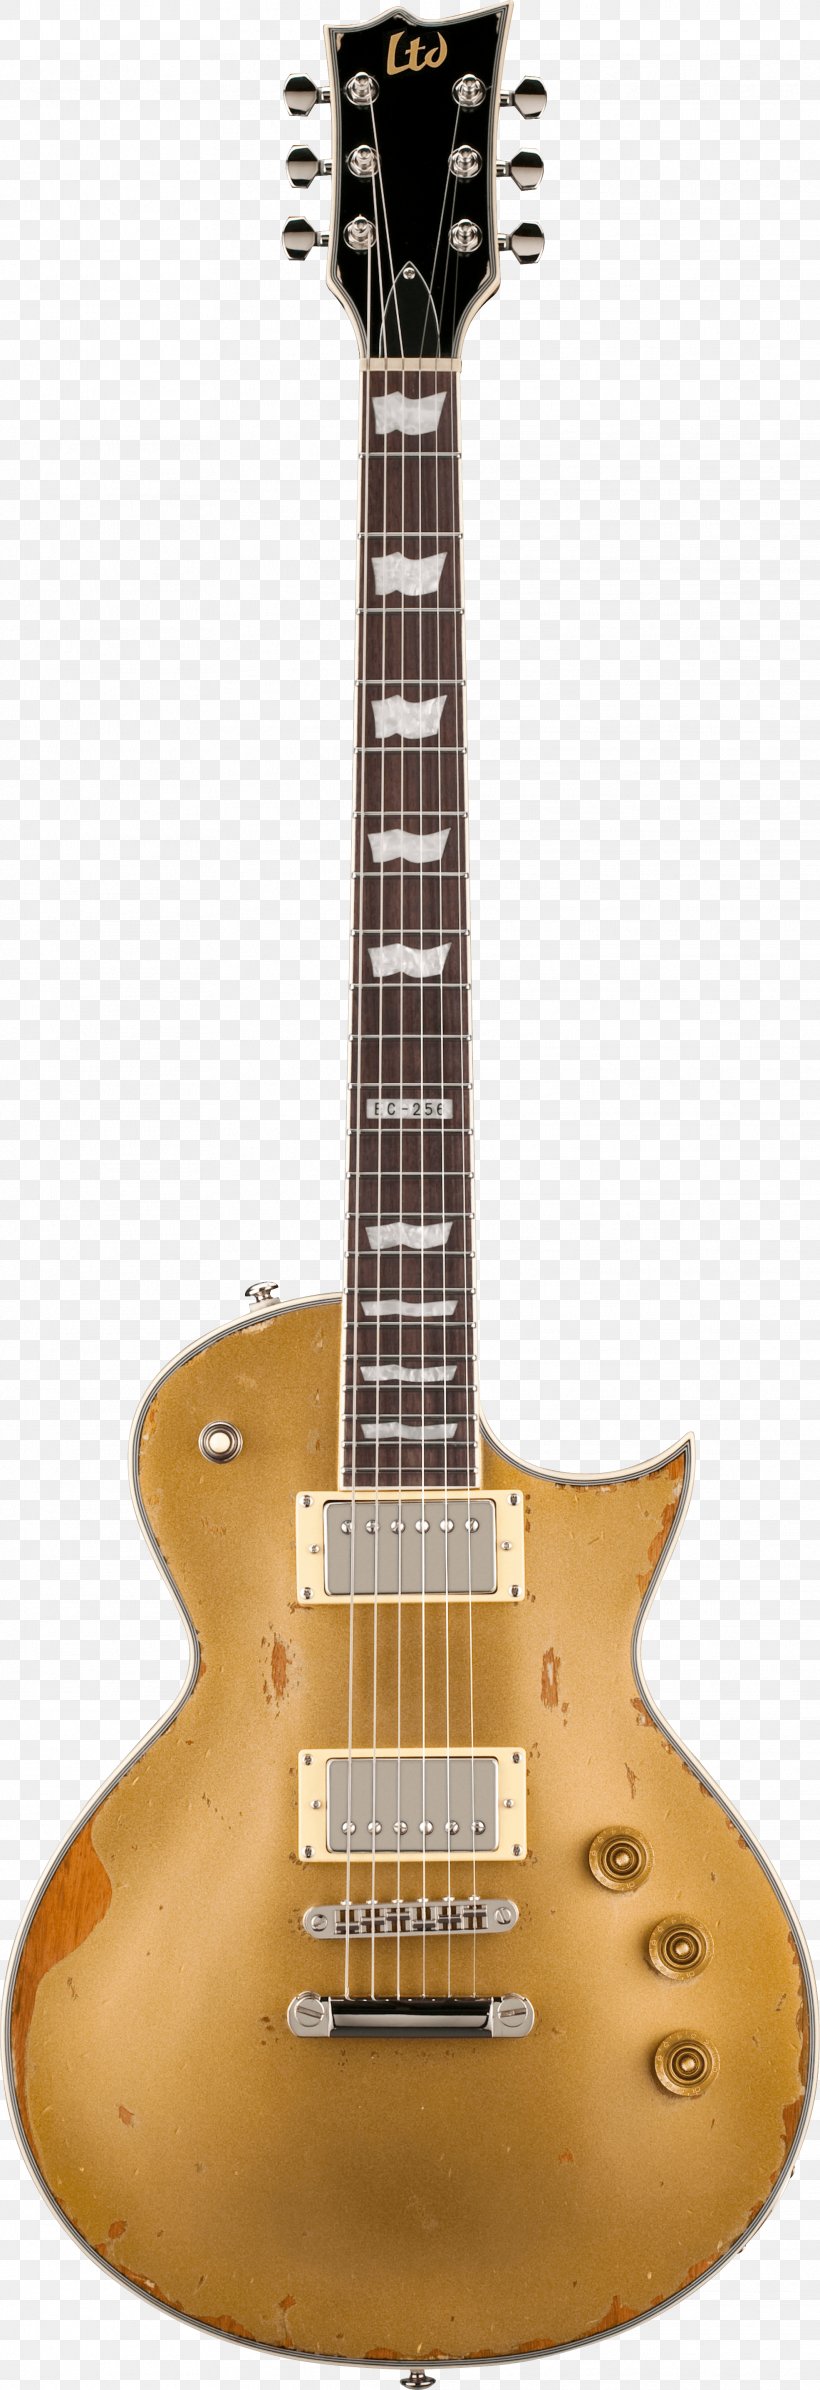 ESP LTD EC-1000 ESP Guitars Gibson Les Paul Electric Guitar, PNG, 1971x5747px, Gibson Les Paul, Acoustic Electric Guitar, Acoustic Guitar, Cutaway, Electric Guitar Download Free